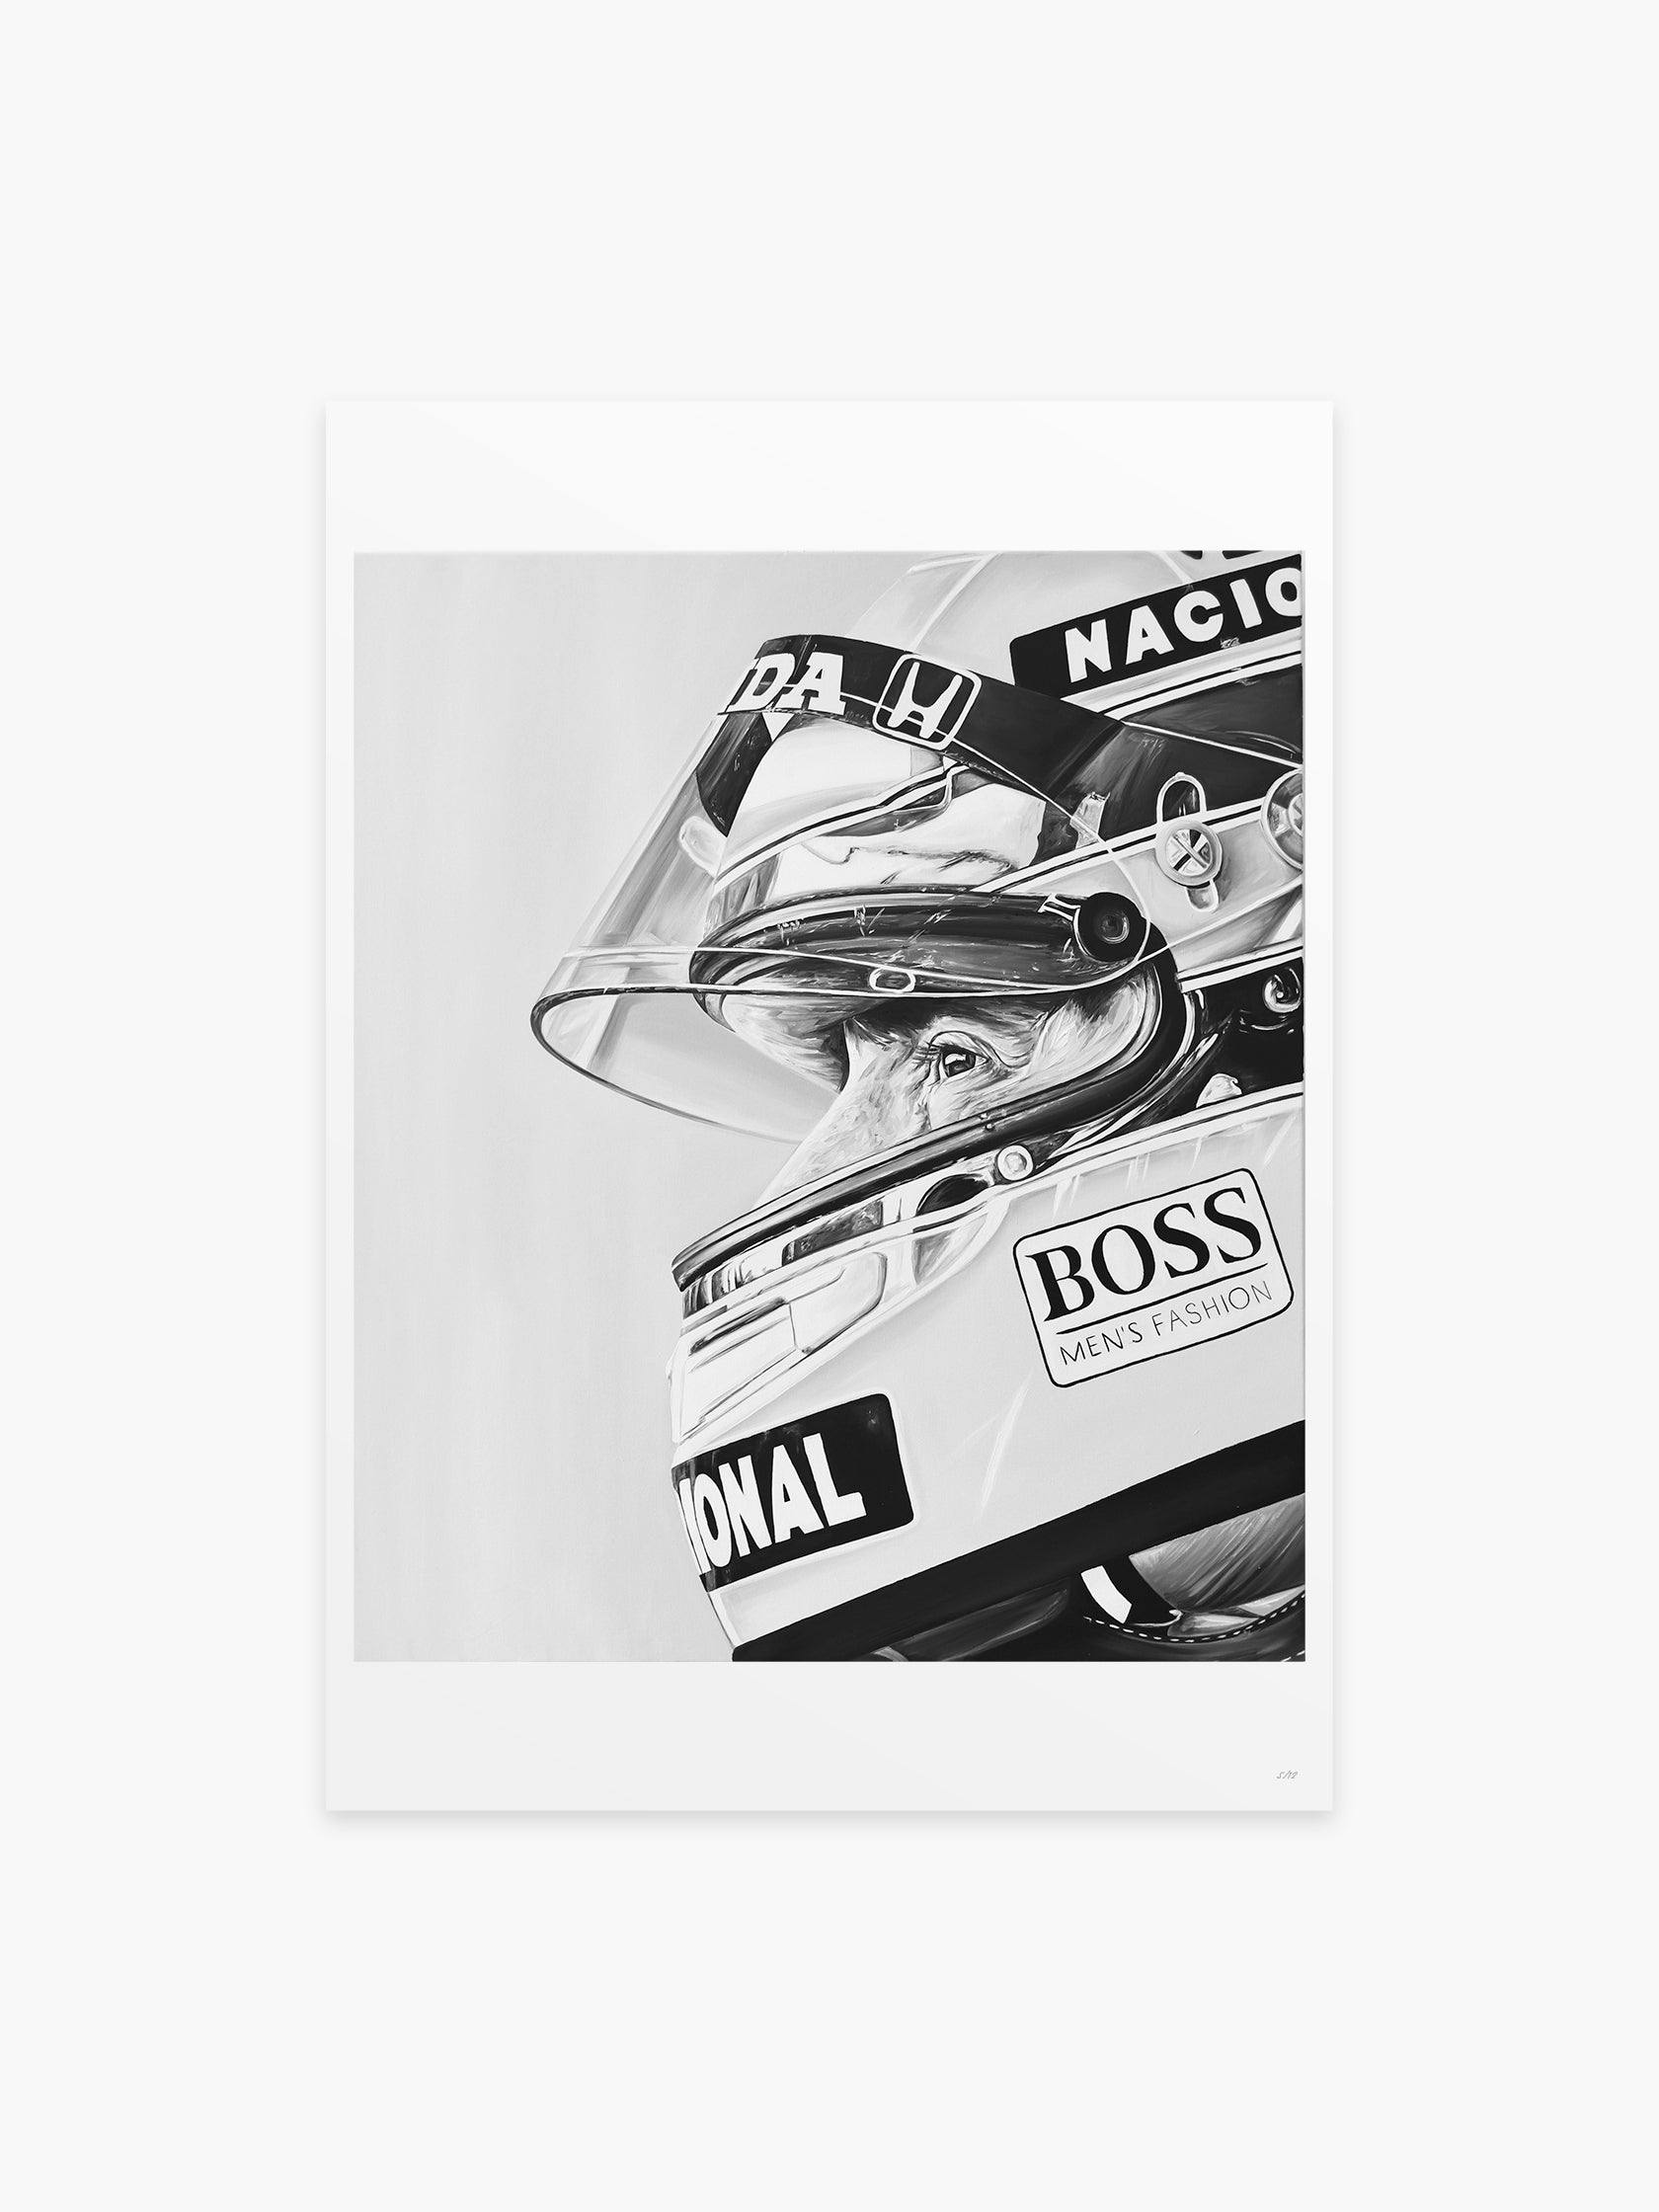 Senna by Ricardo Rodriguez - Mankovsky Gallery